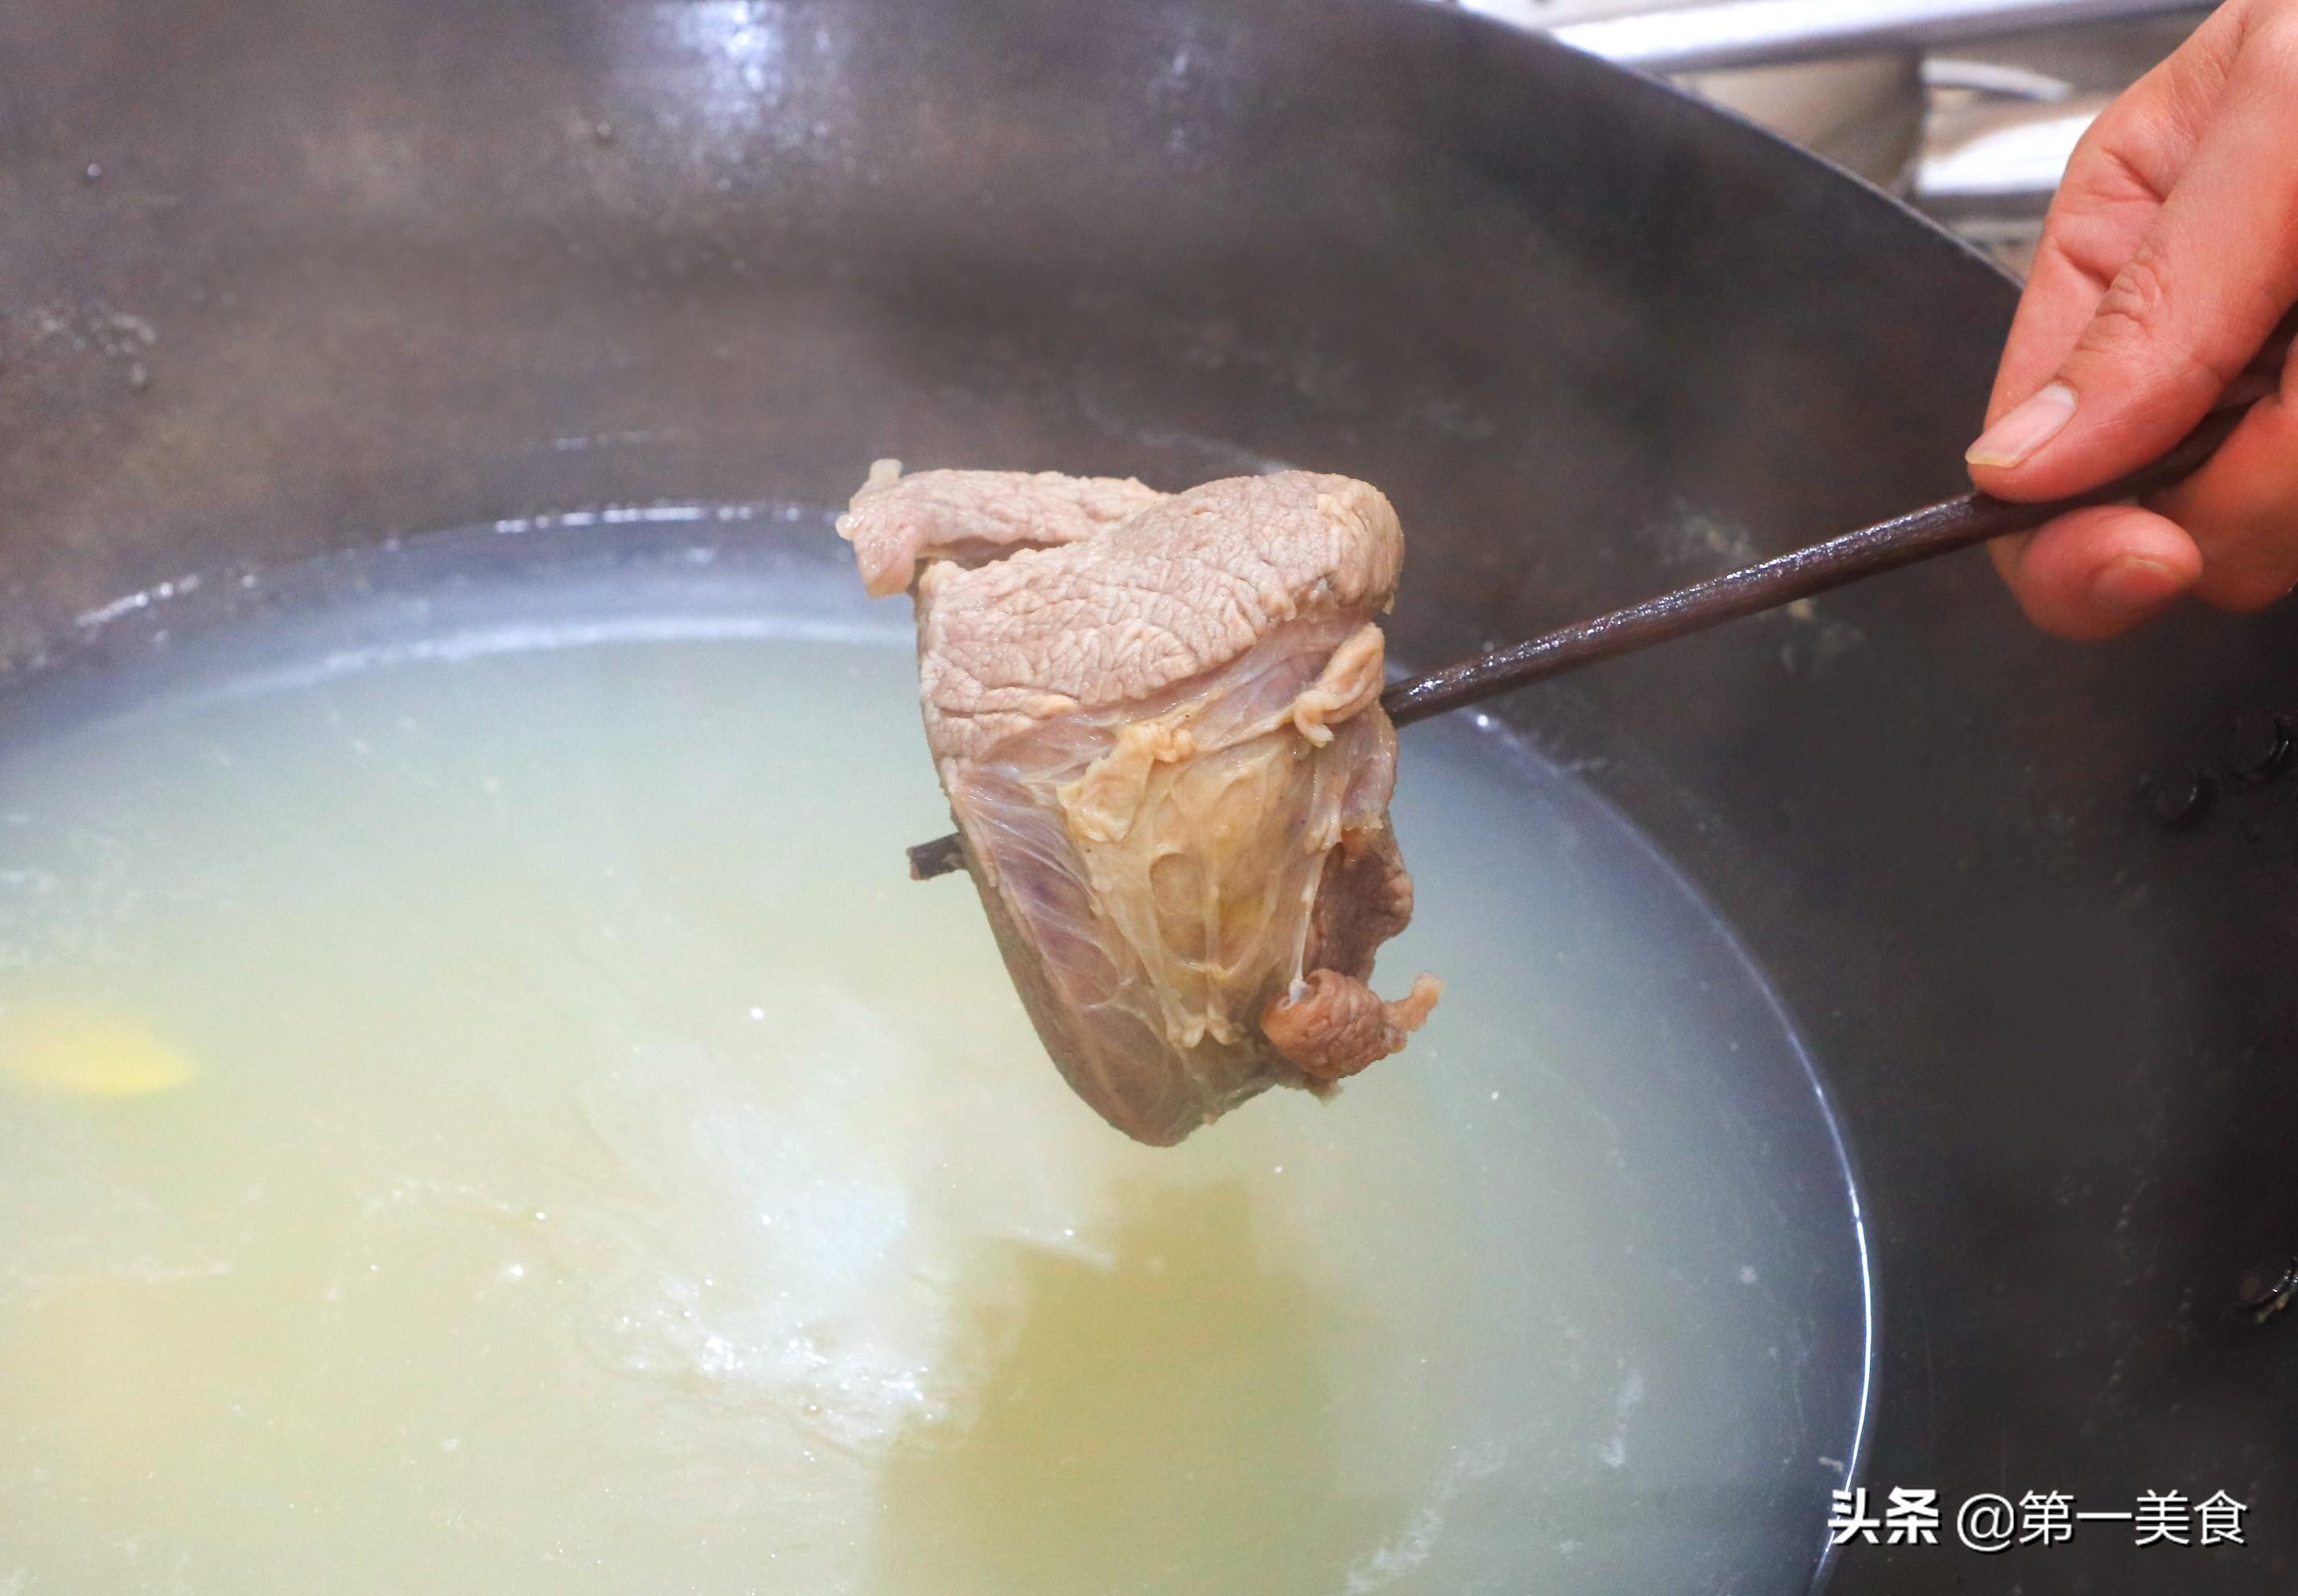 炖牛肉汤的家常做法简单 ，牛肉软烂汤汁鲜美，秋冬季节更要多喝